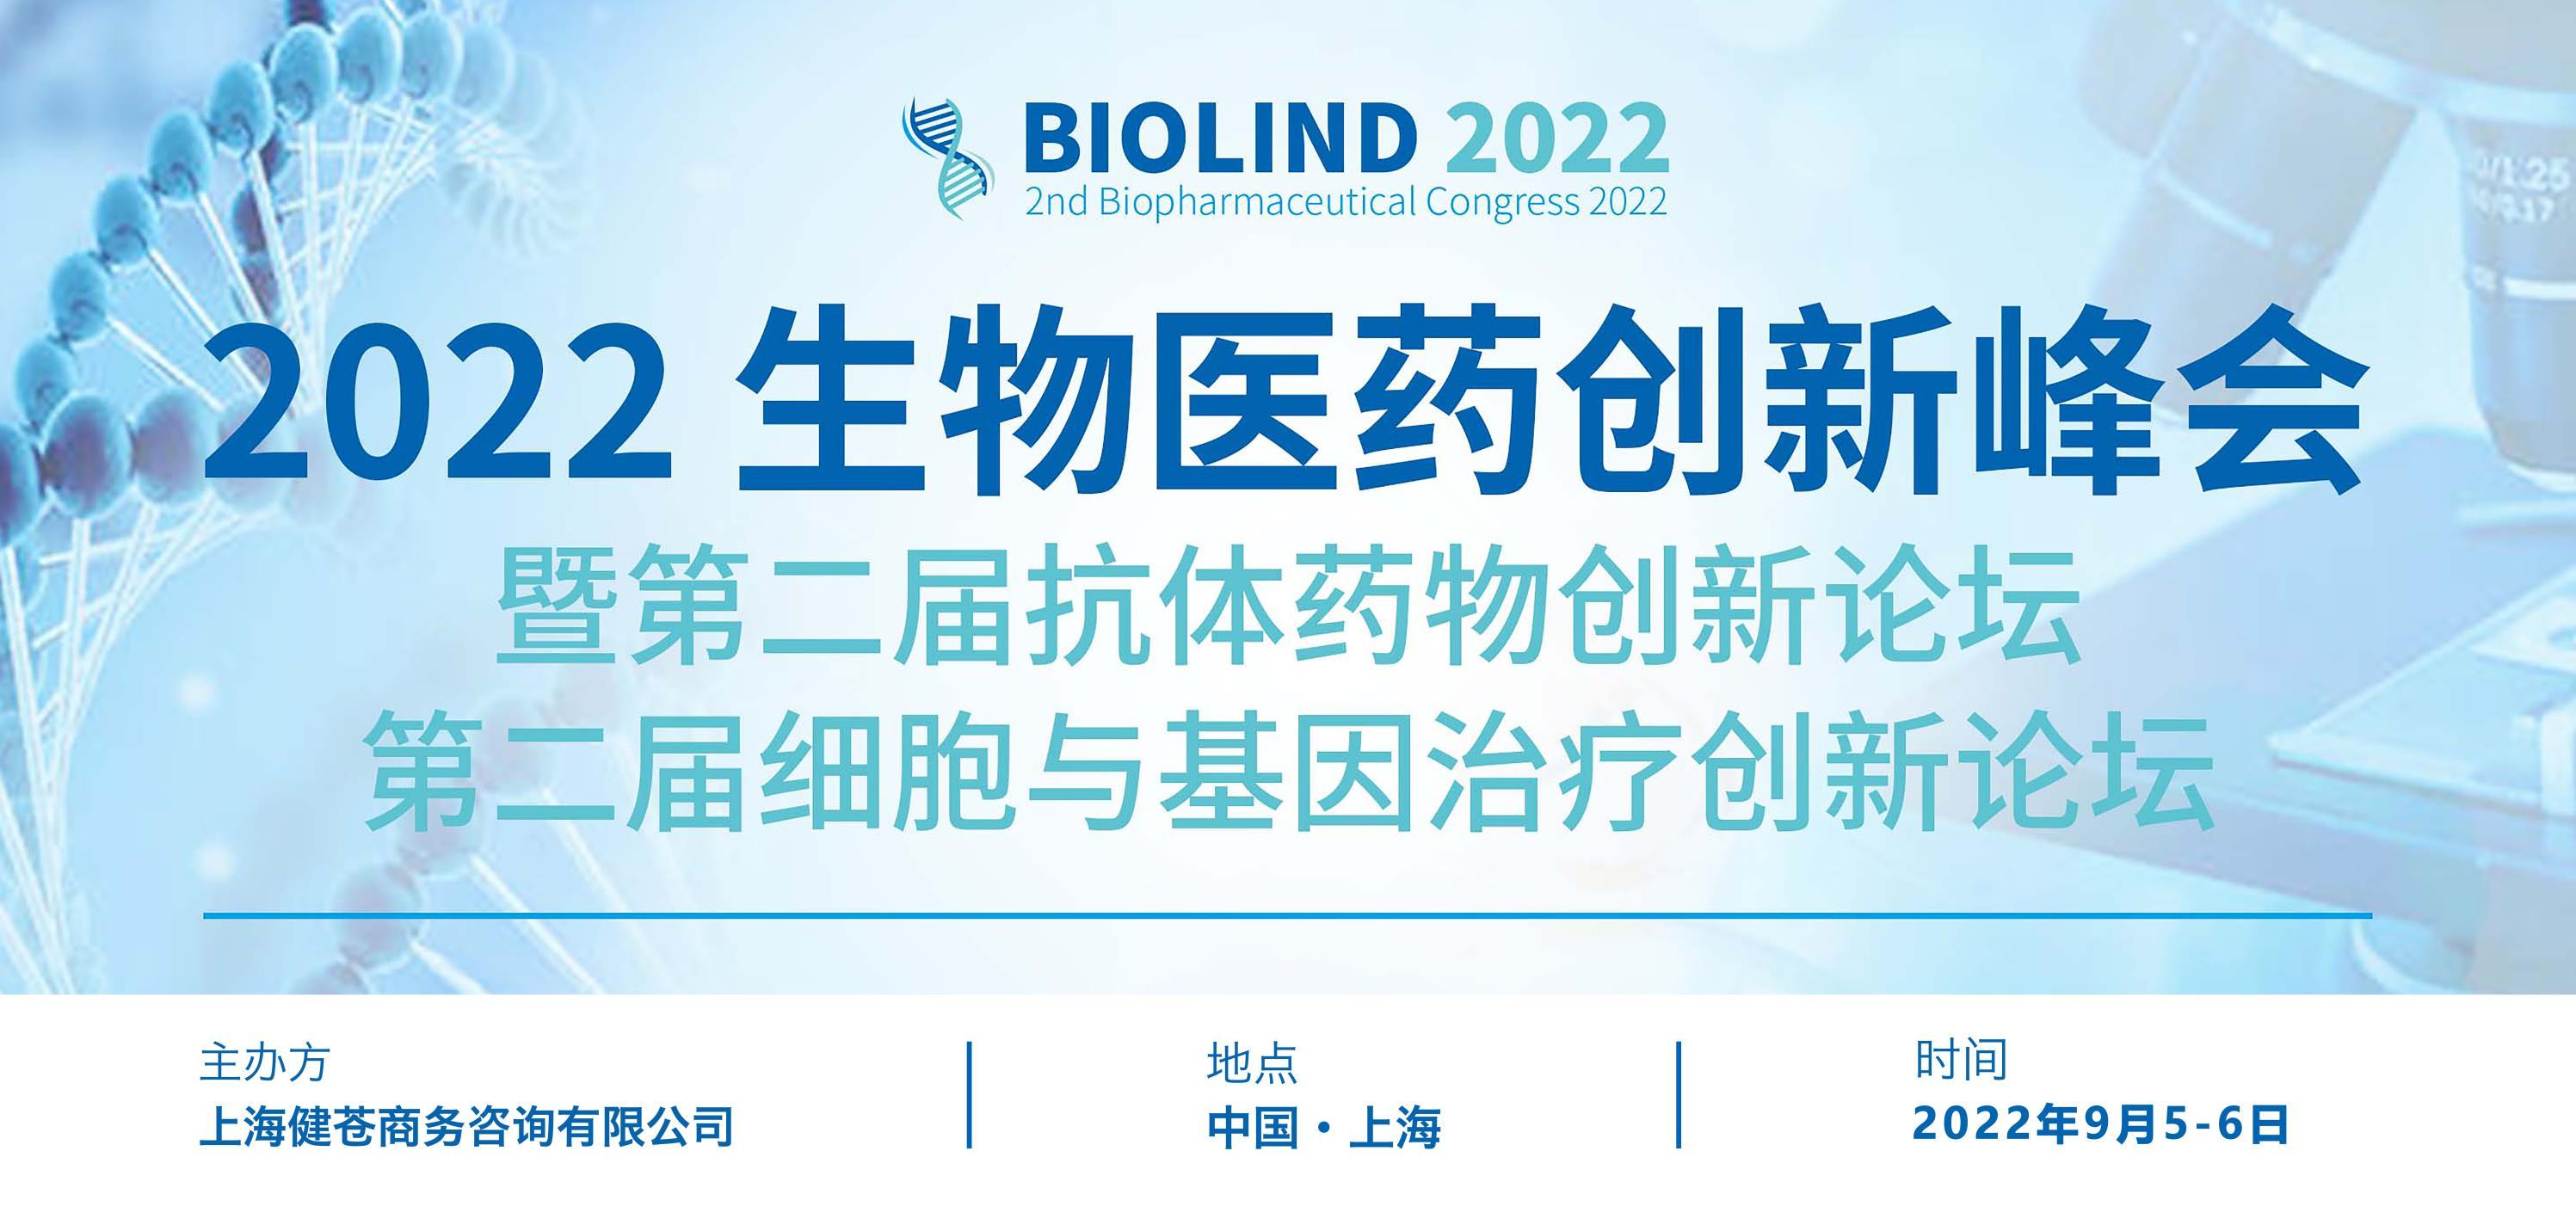 2022生物醫藥創新峰會